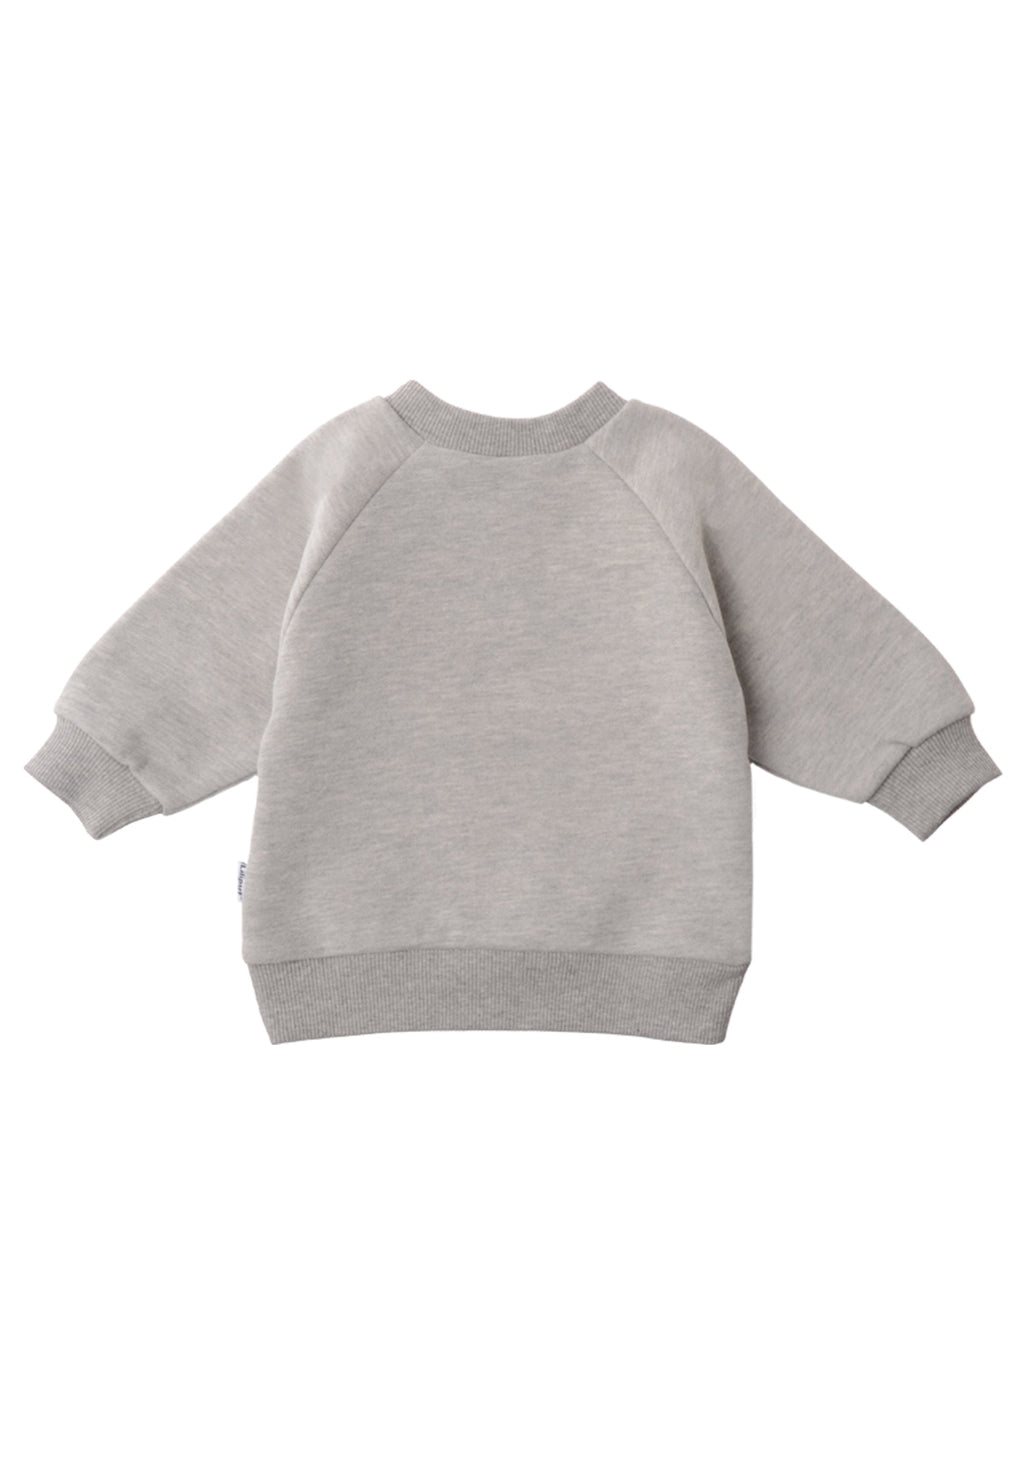 Graues Sweatshirt mit Croissant Print für Babys und Kinder – Liliput